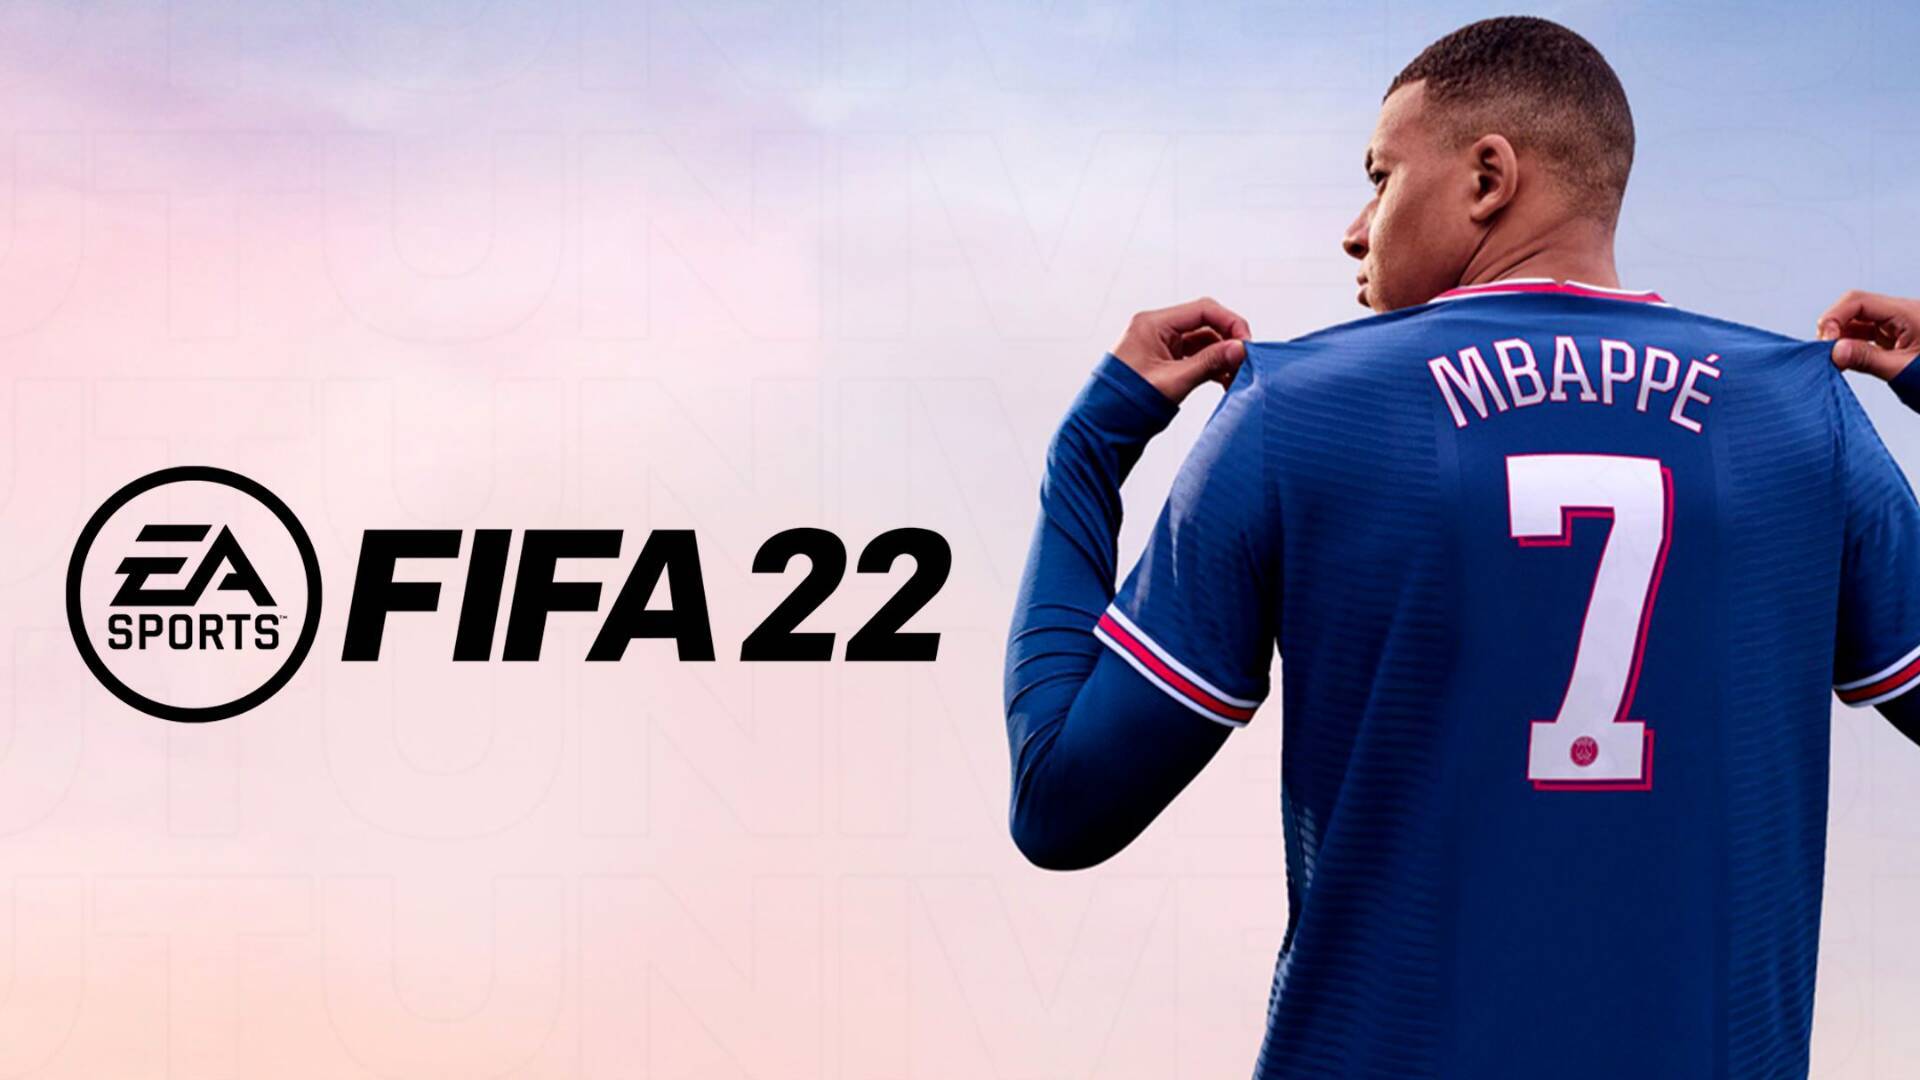 لعبة فيفا 22 الرسمية للاندرويد FIFA 2022 ومميزات لعبة فيفا 2022 اخر إصدار